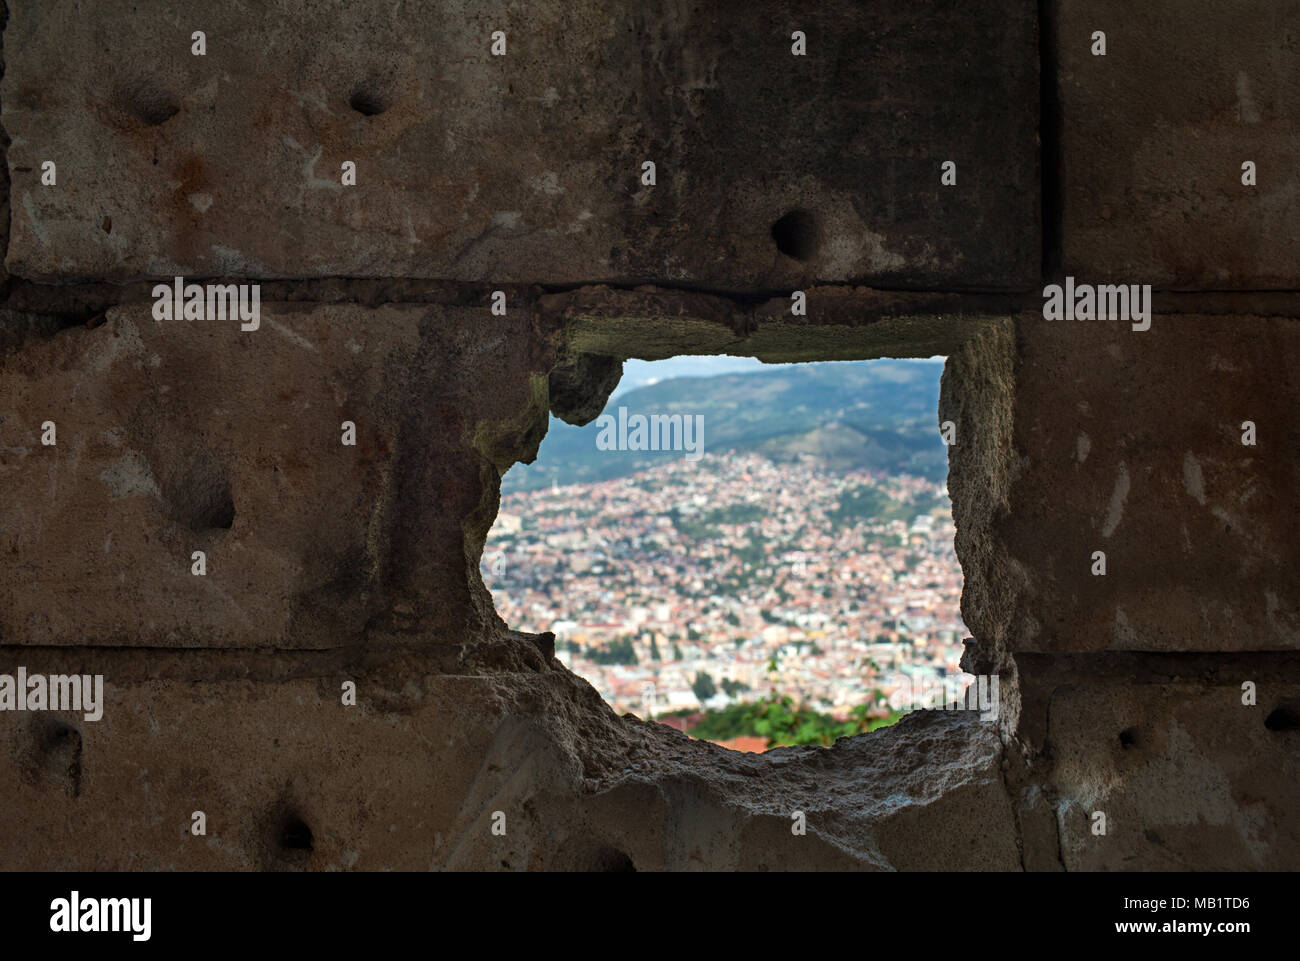 Panoramablick auf die Stadt Sarajevo aus dem Inneren eines verlassenen Gebäude zerstört, die durch Krieg, Hauptstadt von Bosnien und Herzegowina In Balkan Osteuropa Stockfoto